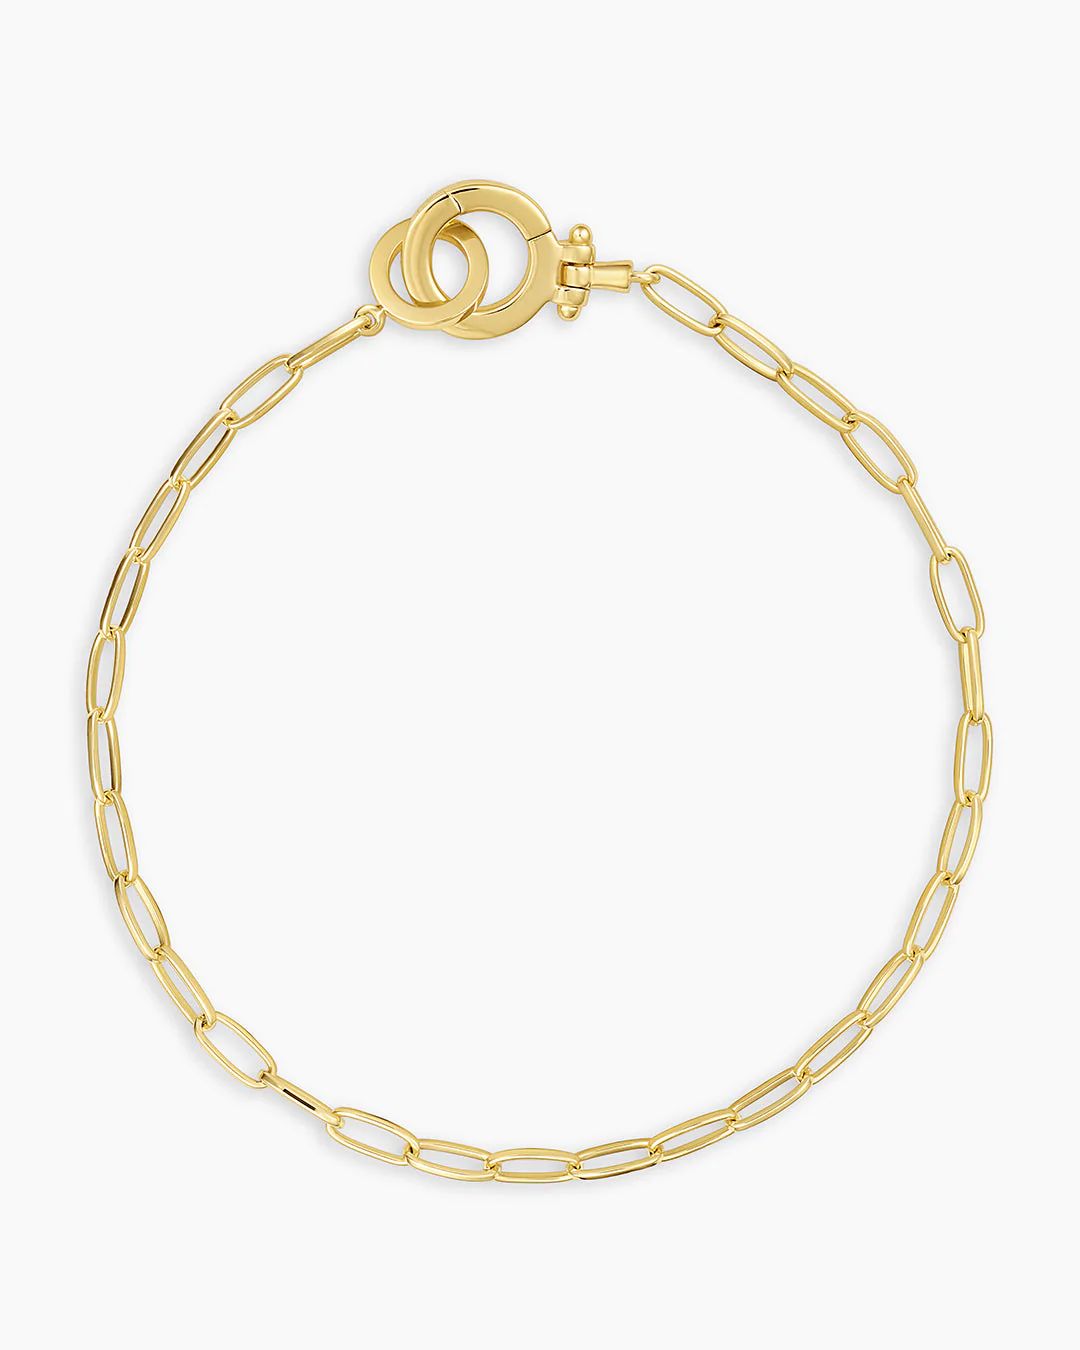 Parker Mini Bracelet in Gold, Women's by gorjana | Gorjana